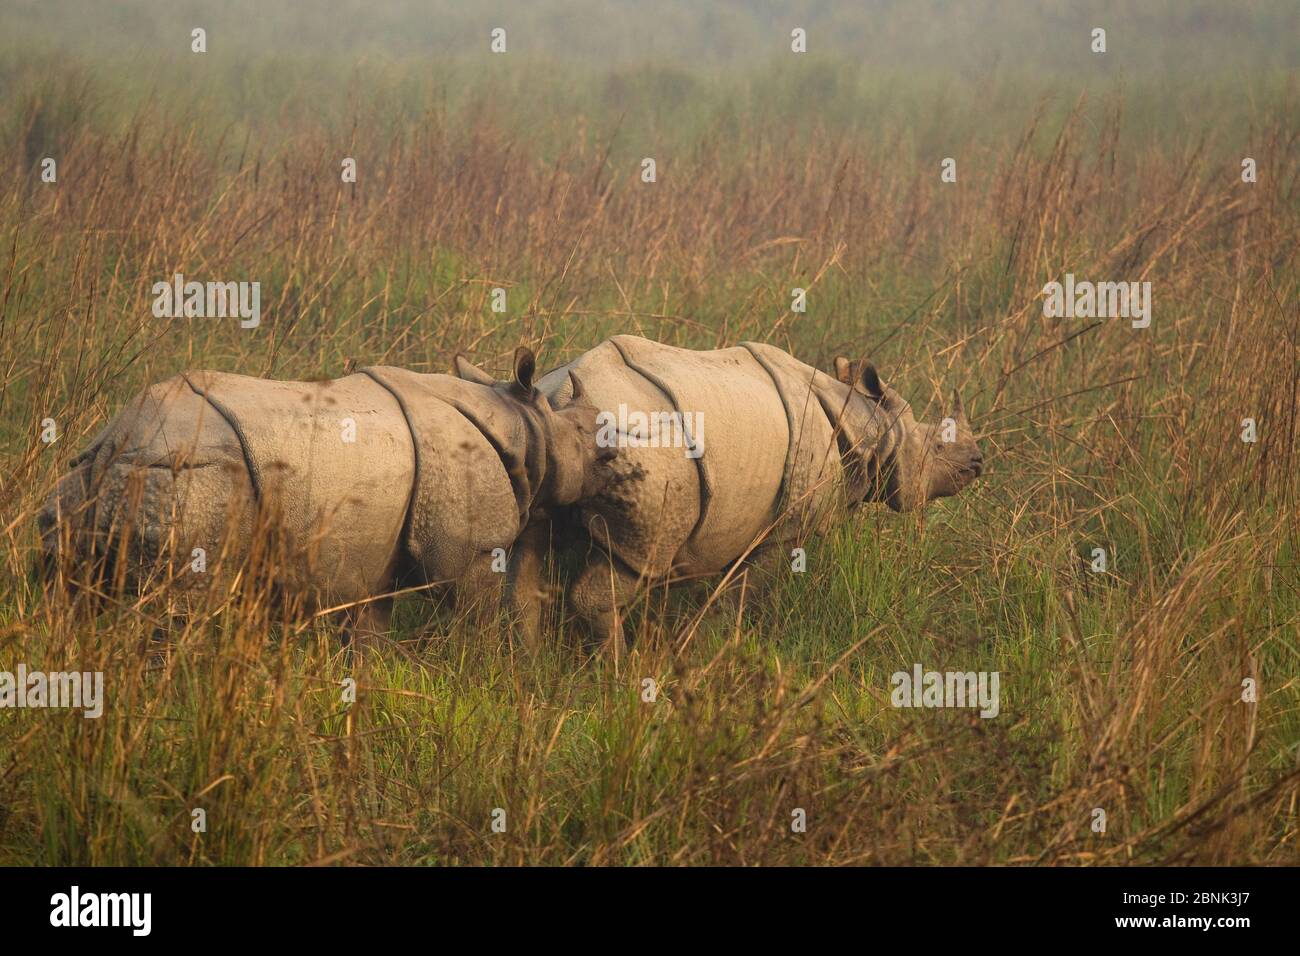 Rinoceronte indio (Rhinoceros unicornis) macho que se esnifaba hembra durante el cortejo. Parque Nacional de Chitwan, Nepal. Foto de stock